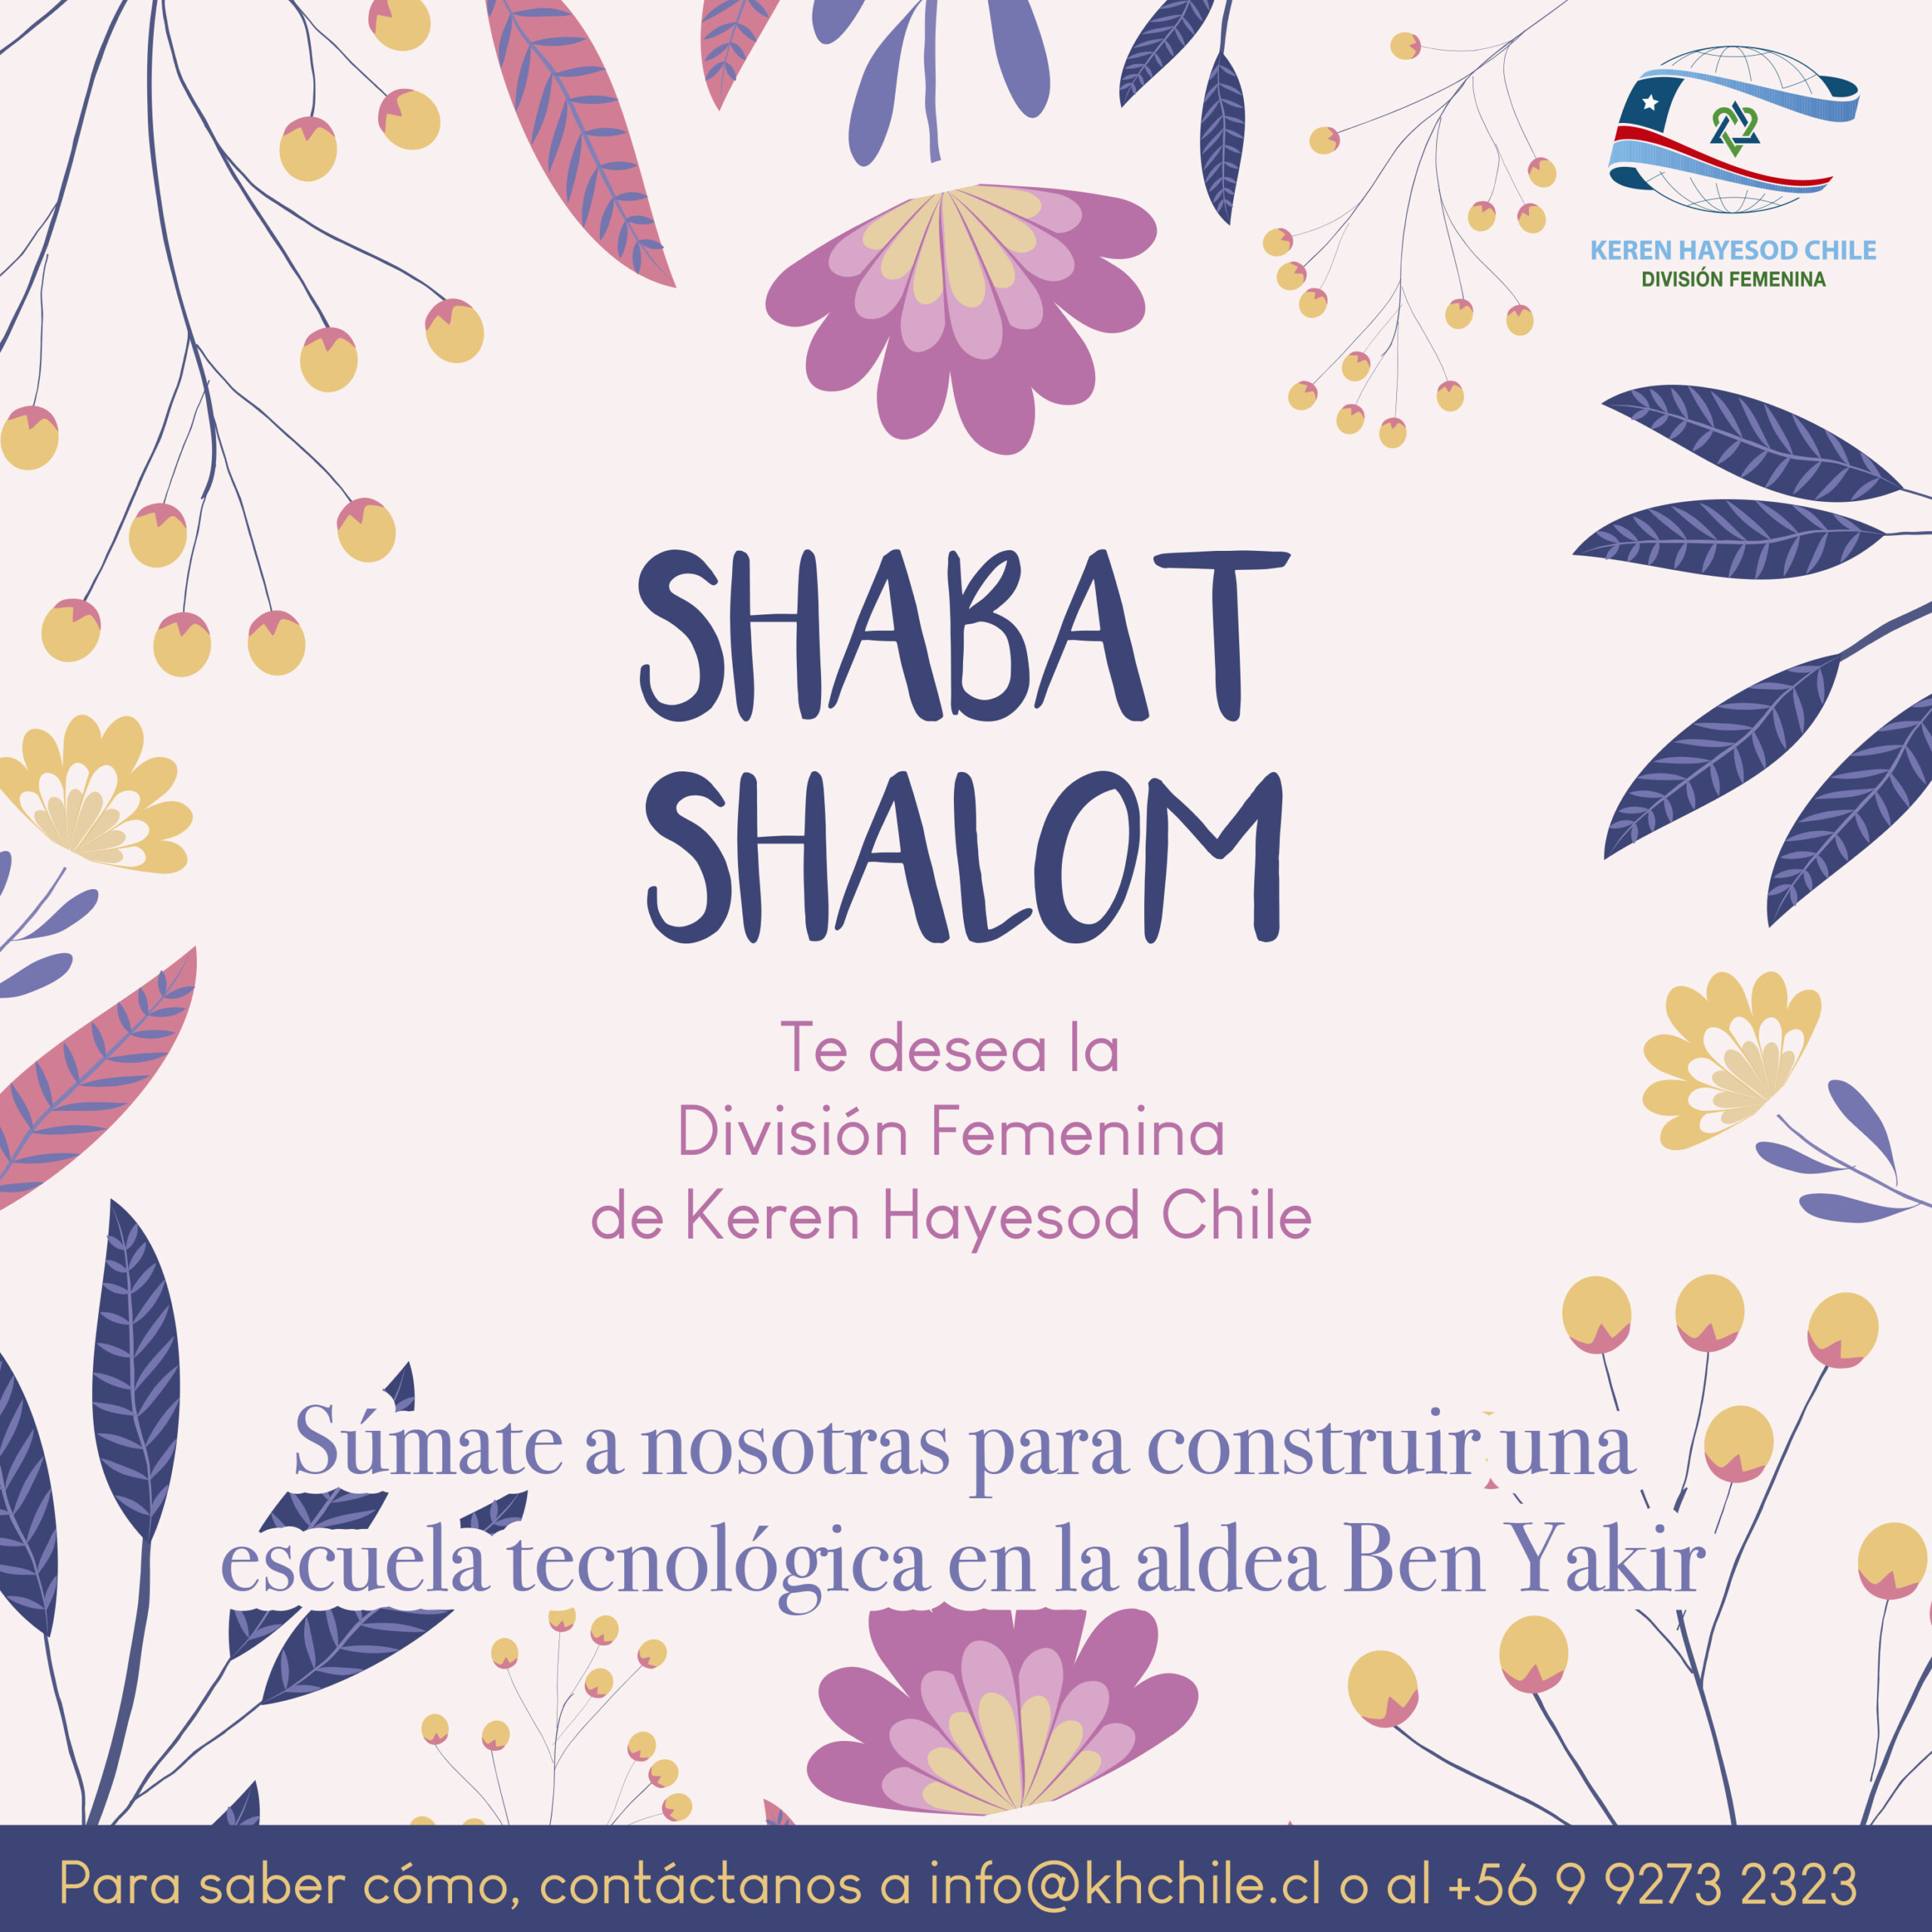  ¡La División Femenina de Keren Hayesod Chile te desea un Shabat Shalom!